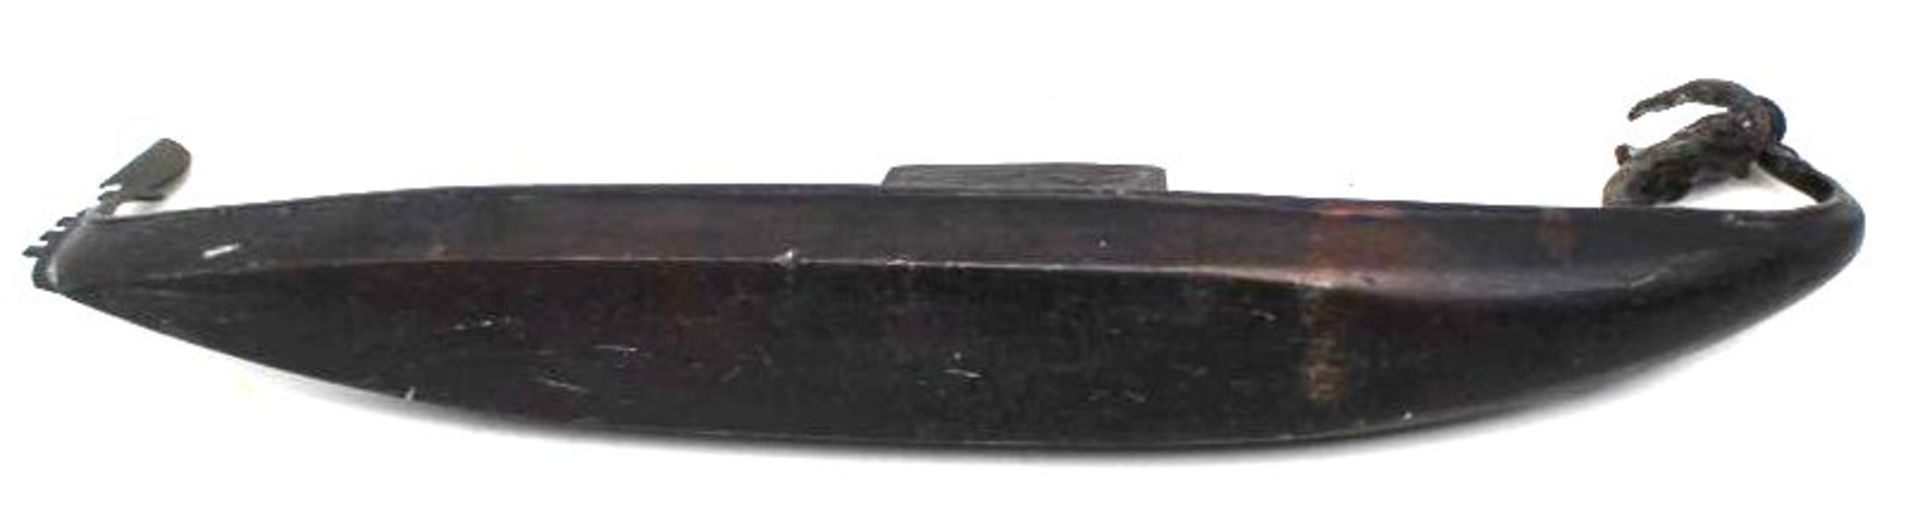 gr. schwere venezianische Gondel aus Metall, bei Gondoliere fehlt das Ruder, Altersspuren, L-30cm, - Image 5 of 5